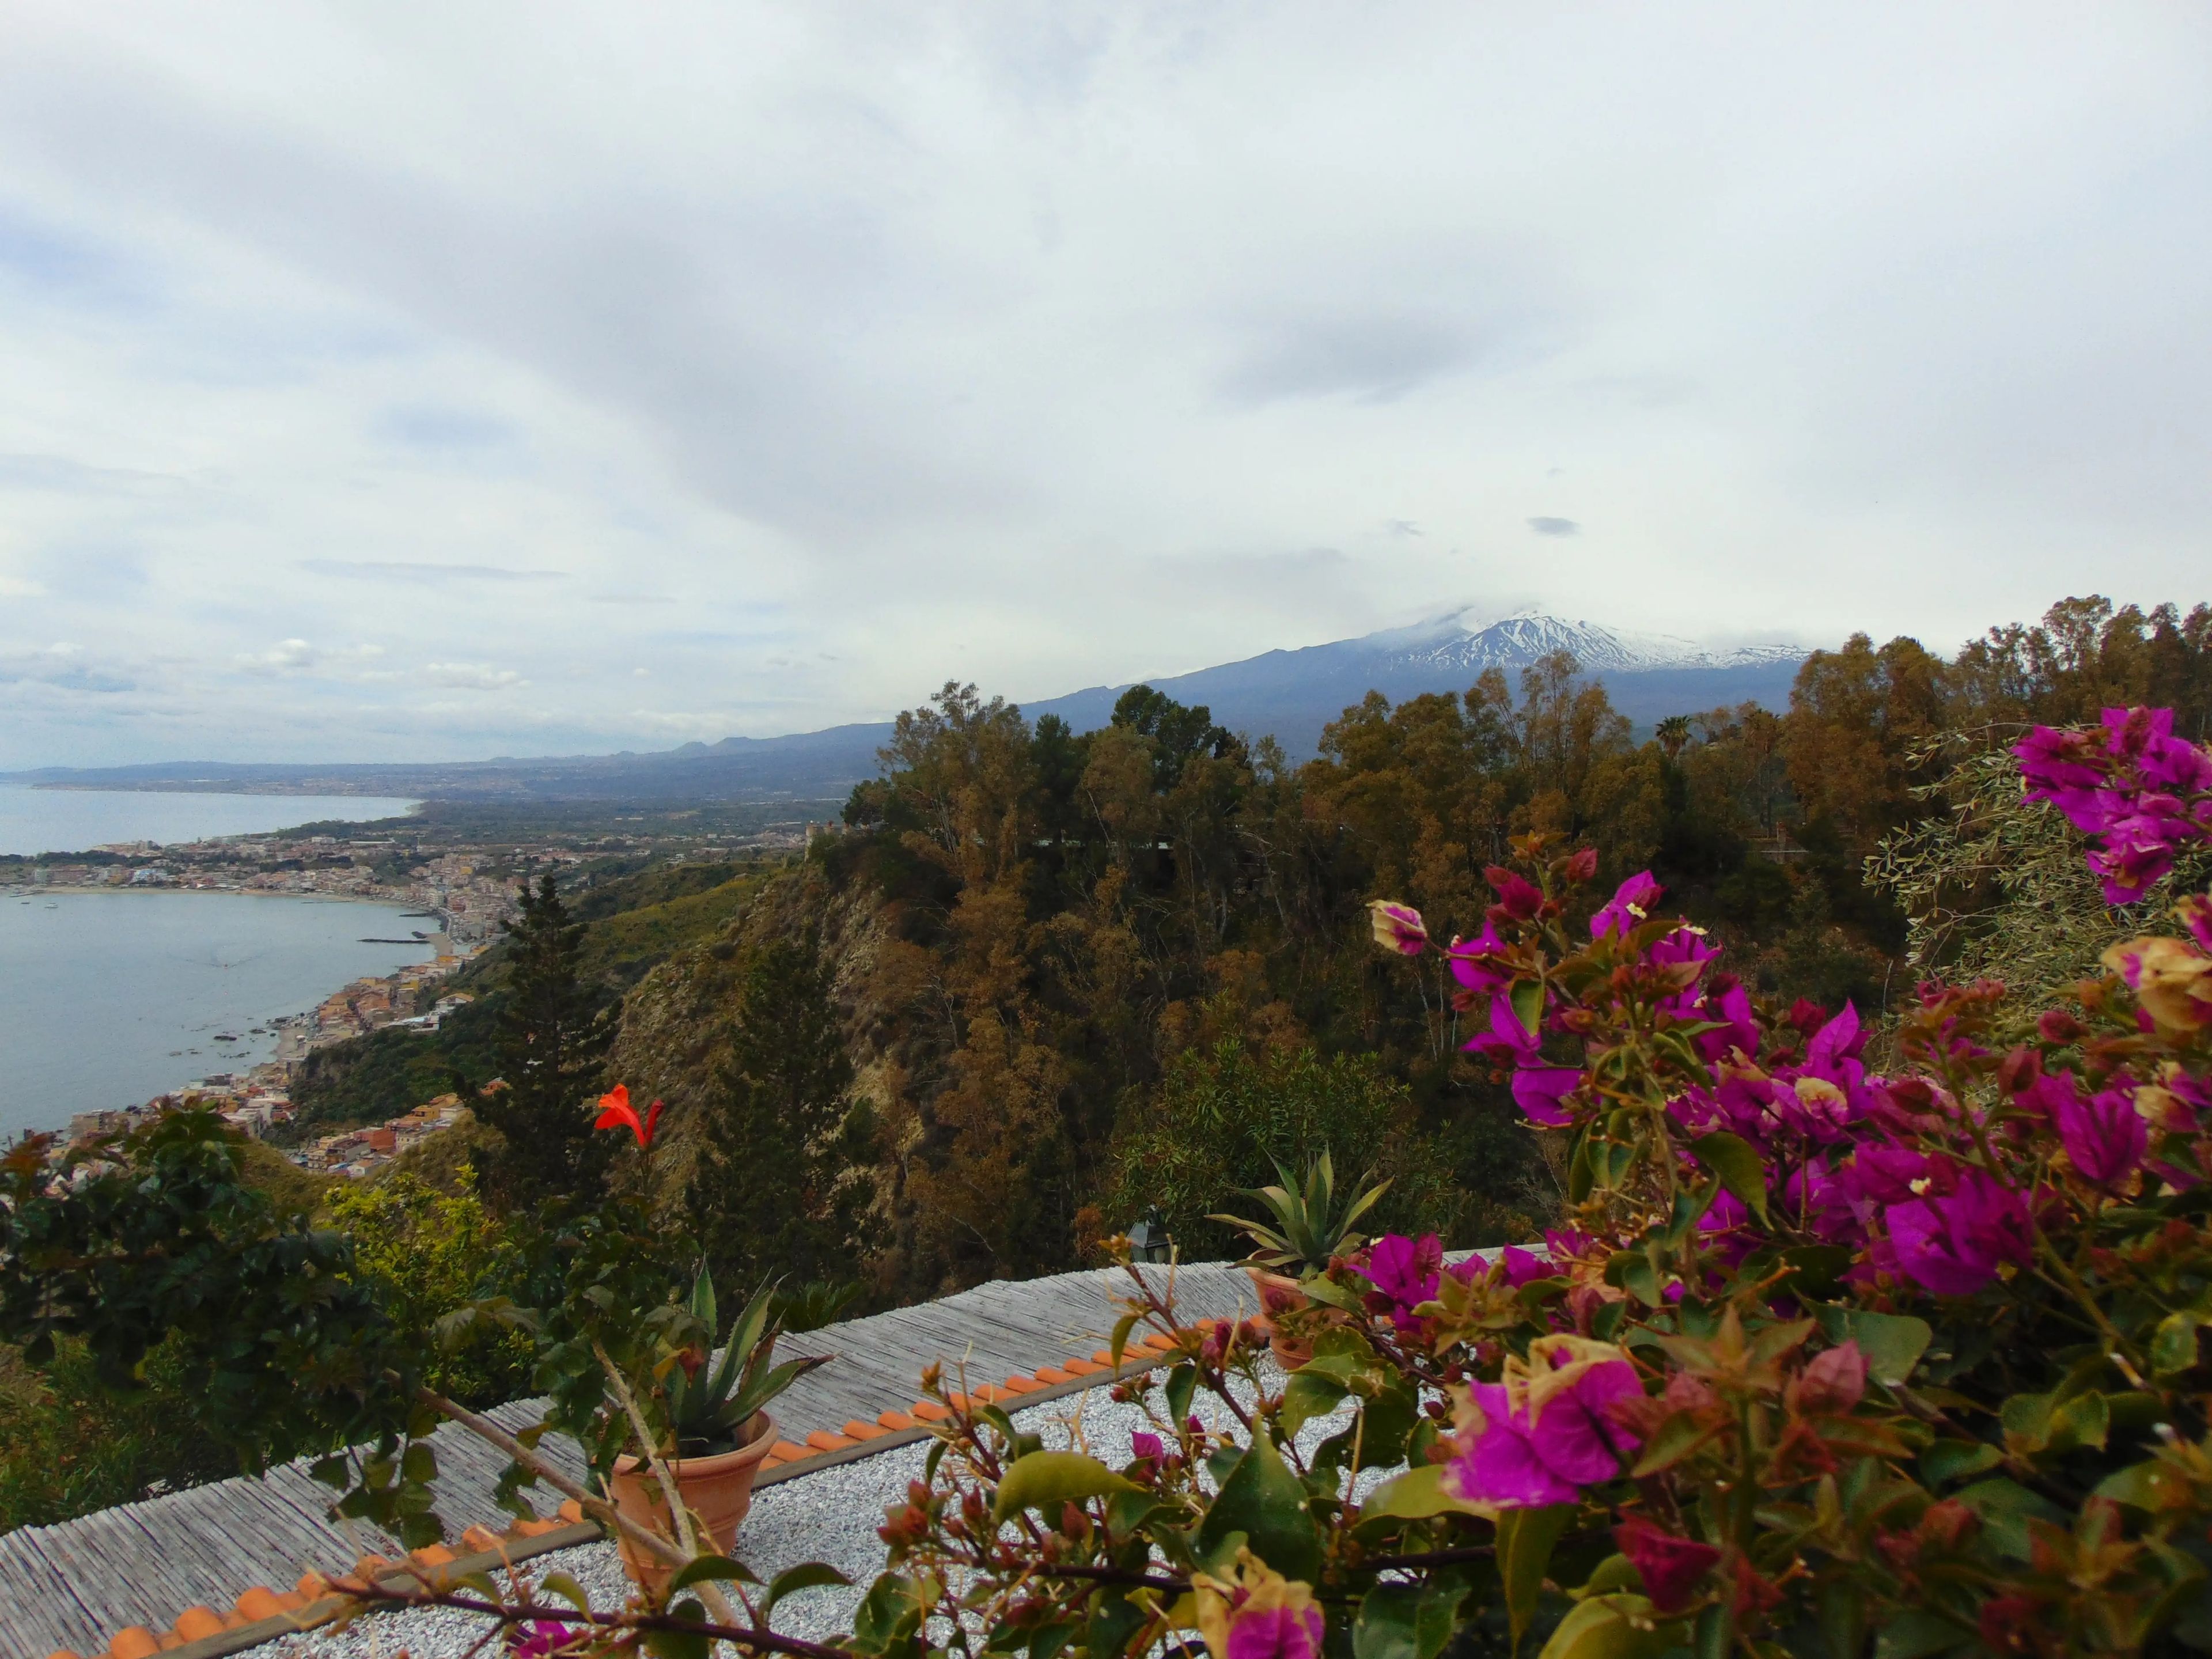 Vista de las flores y el Etna desde el hotel.